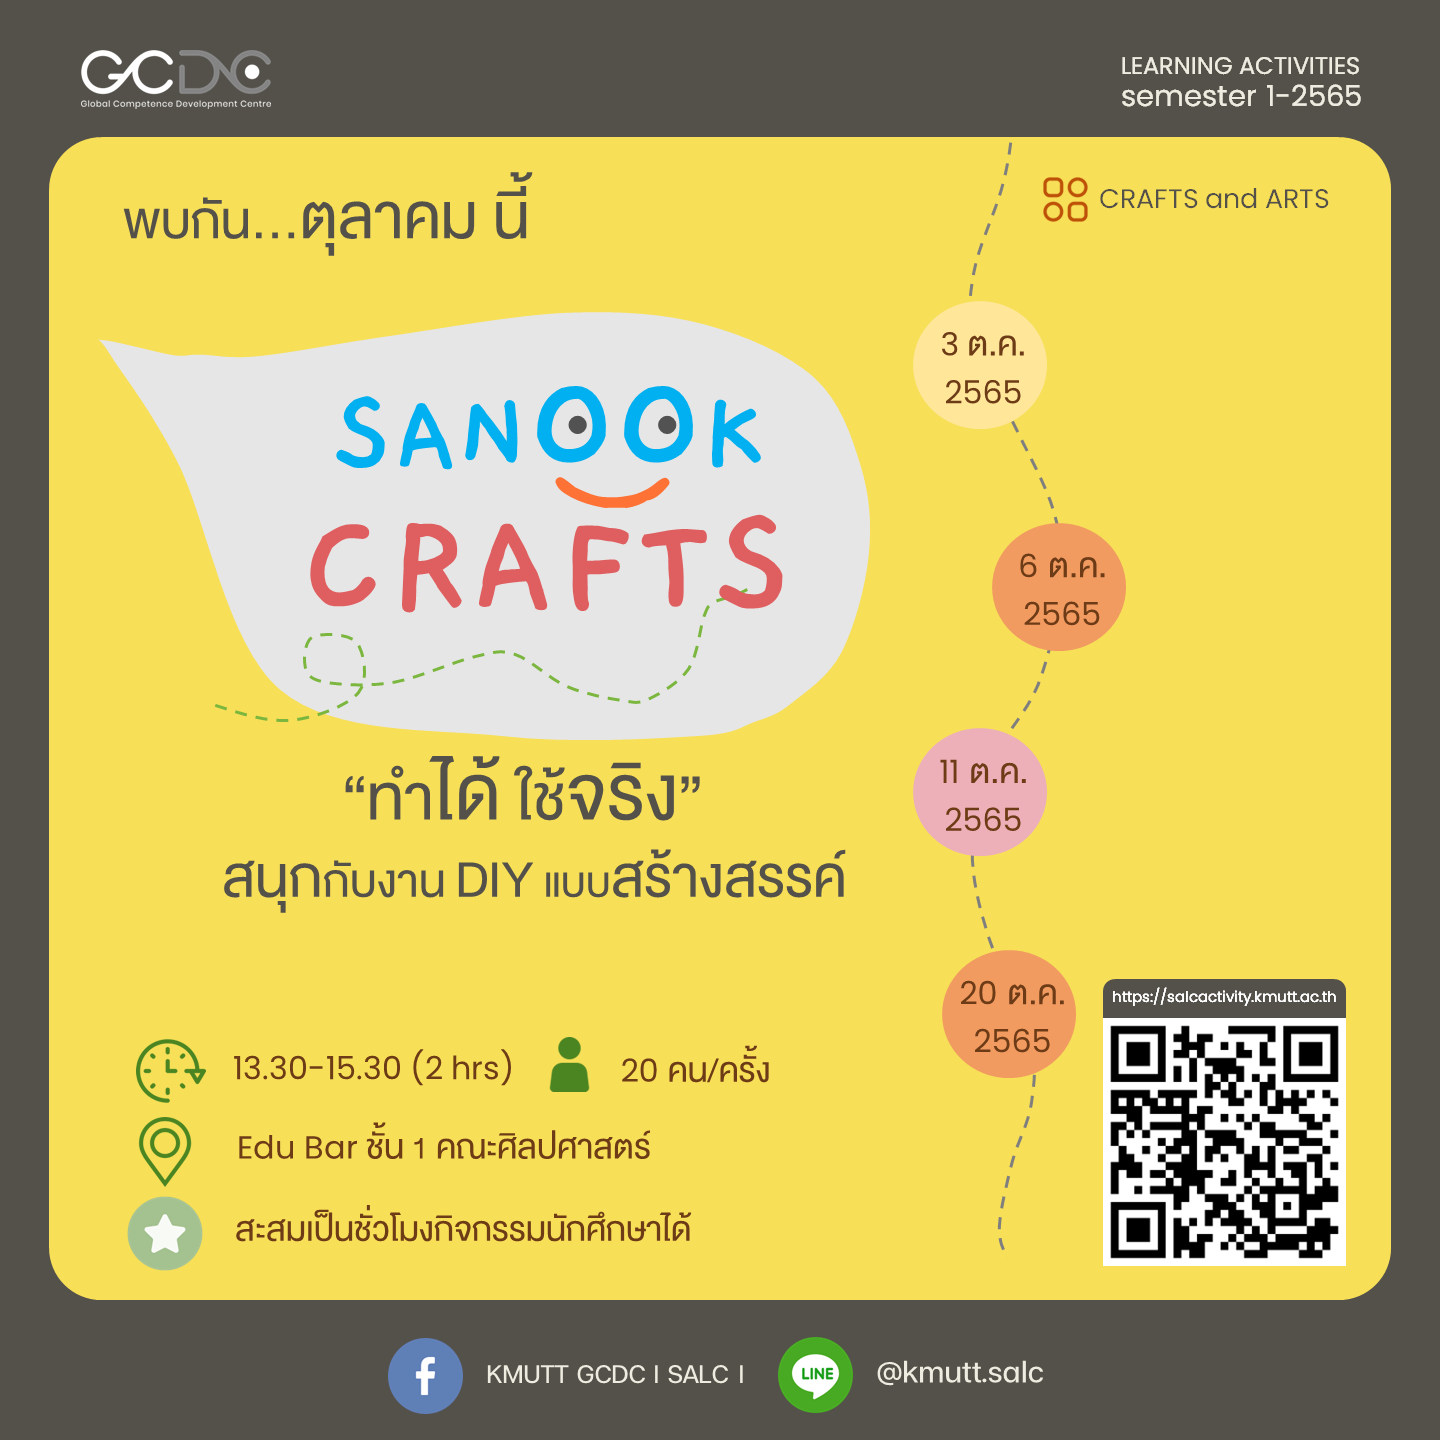 Sanook Crafts (DIY)$